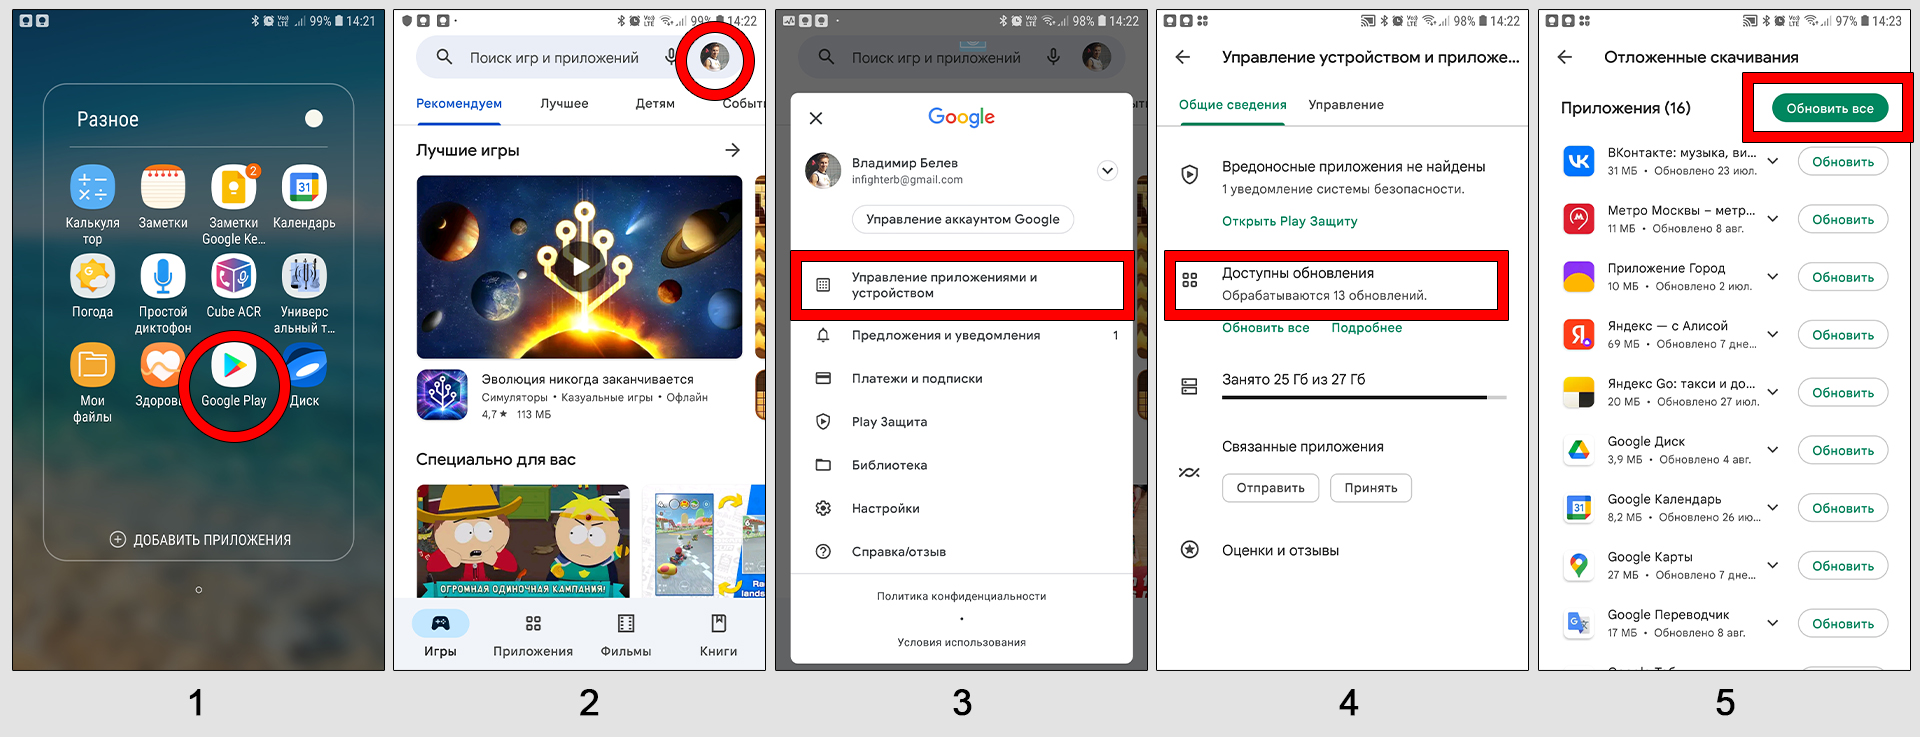 5 этапов обновления Яндекс браузера на телефоне Android через приложение Google Play.